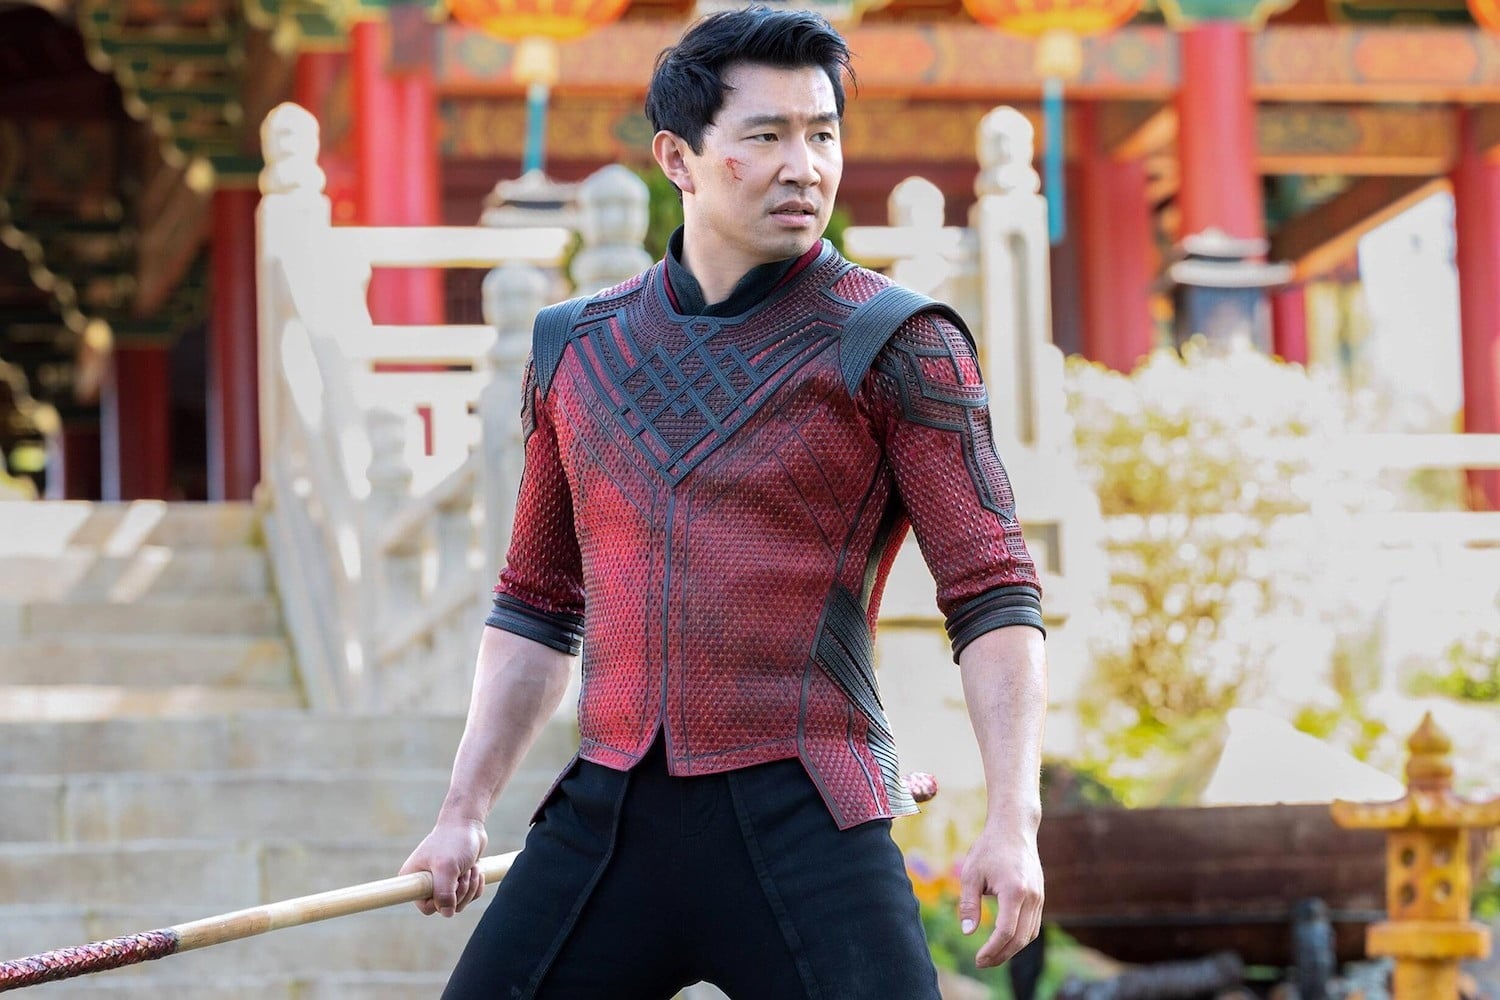 Foto de Review | Marvel regresa al cine en grande con las artes marciales de Shang-Chi